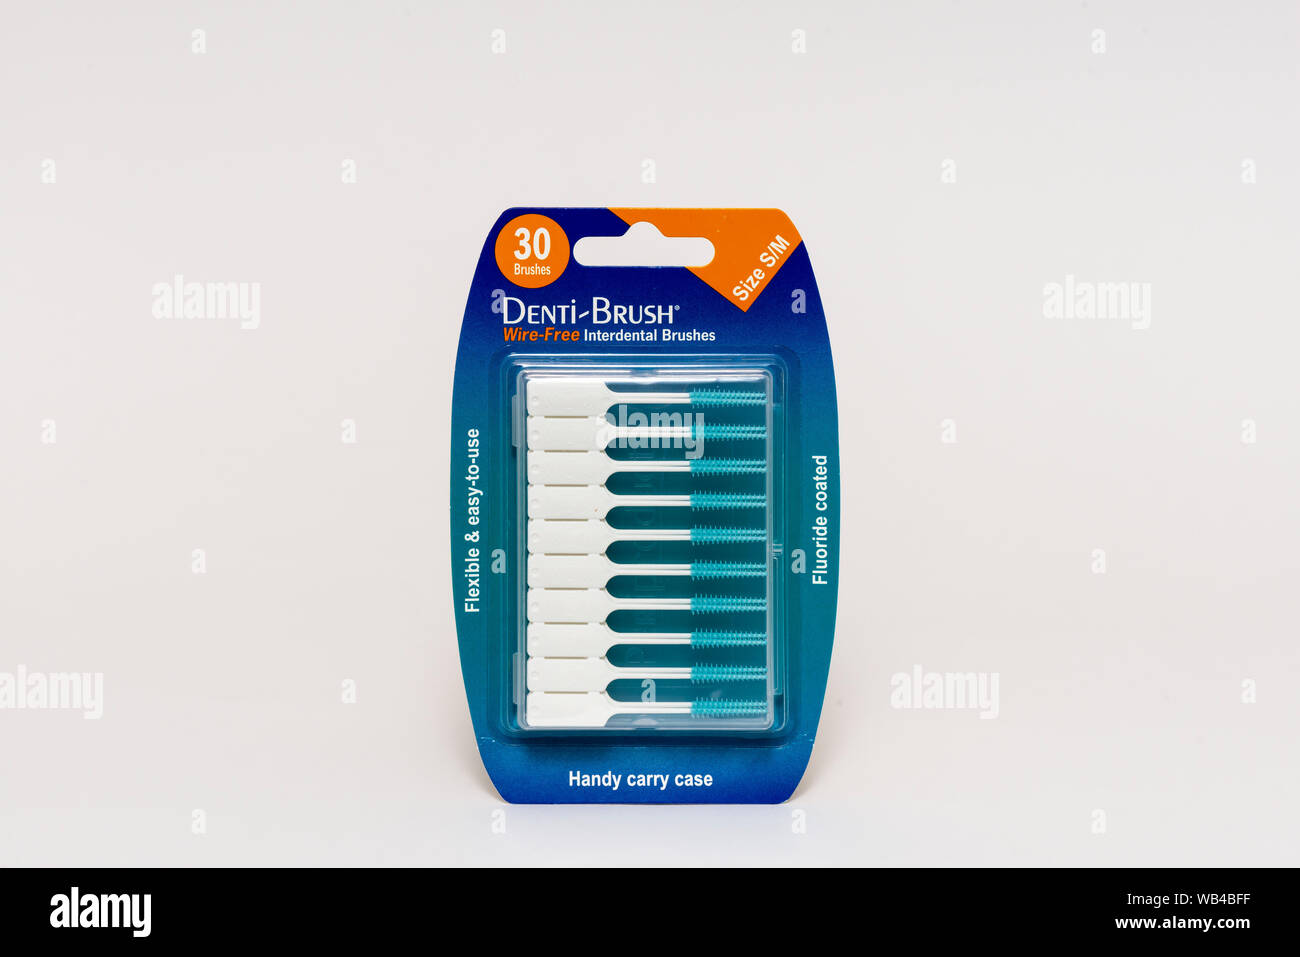 Dentalhygiene und eine Packung Denti-Brush fluoridbeschichteter drahtloser Interdentalbürsten auf weißem Hintergrund Stockfoto